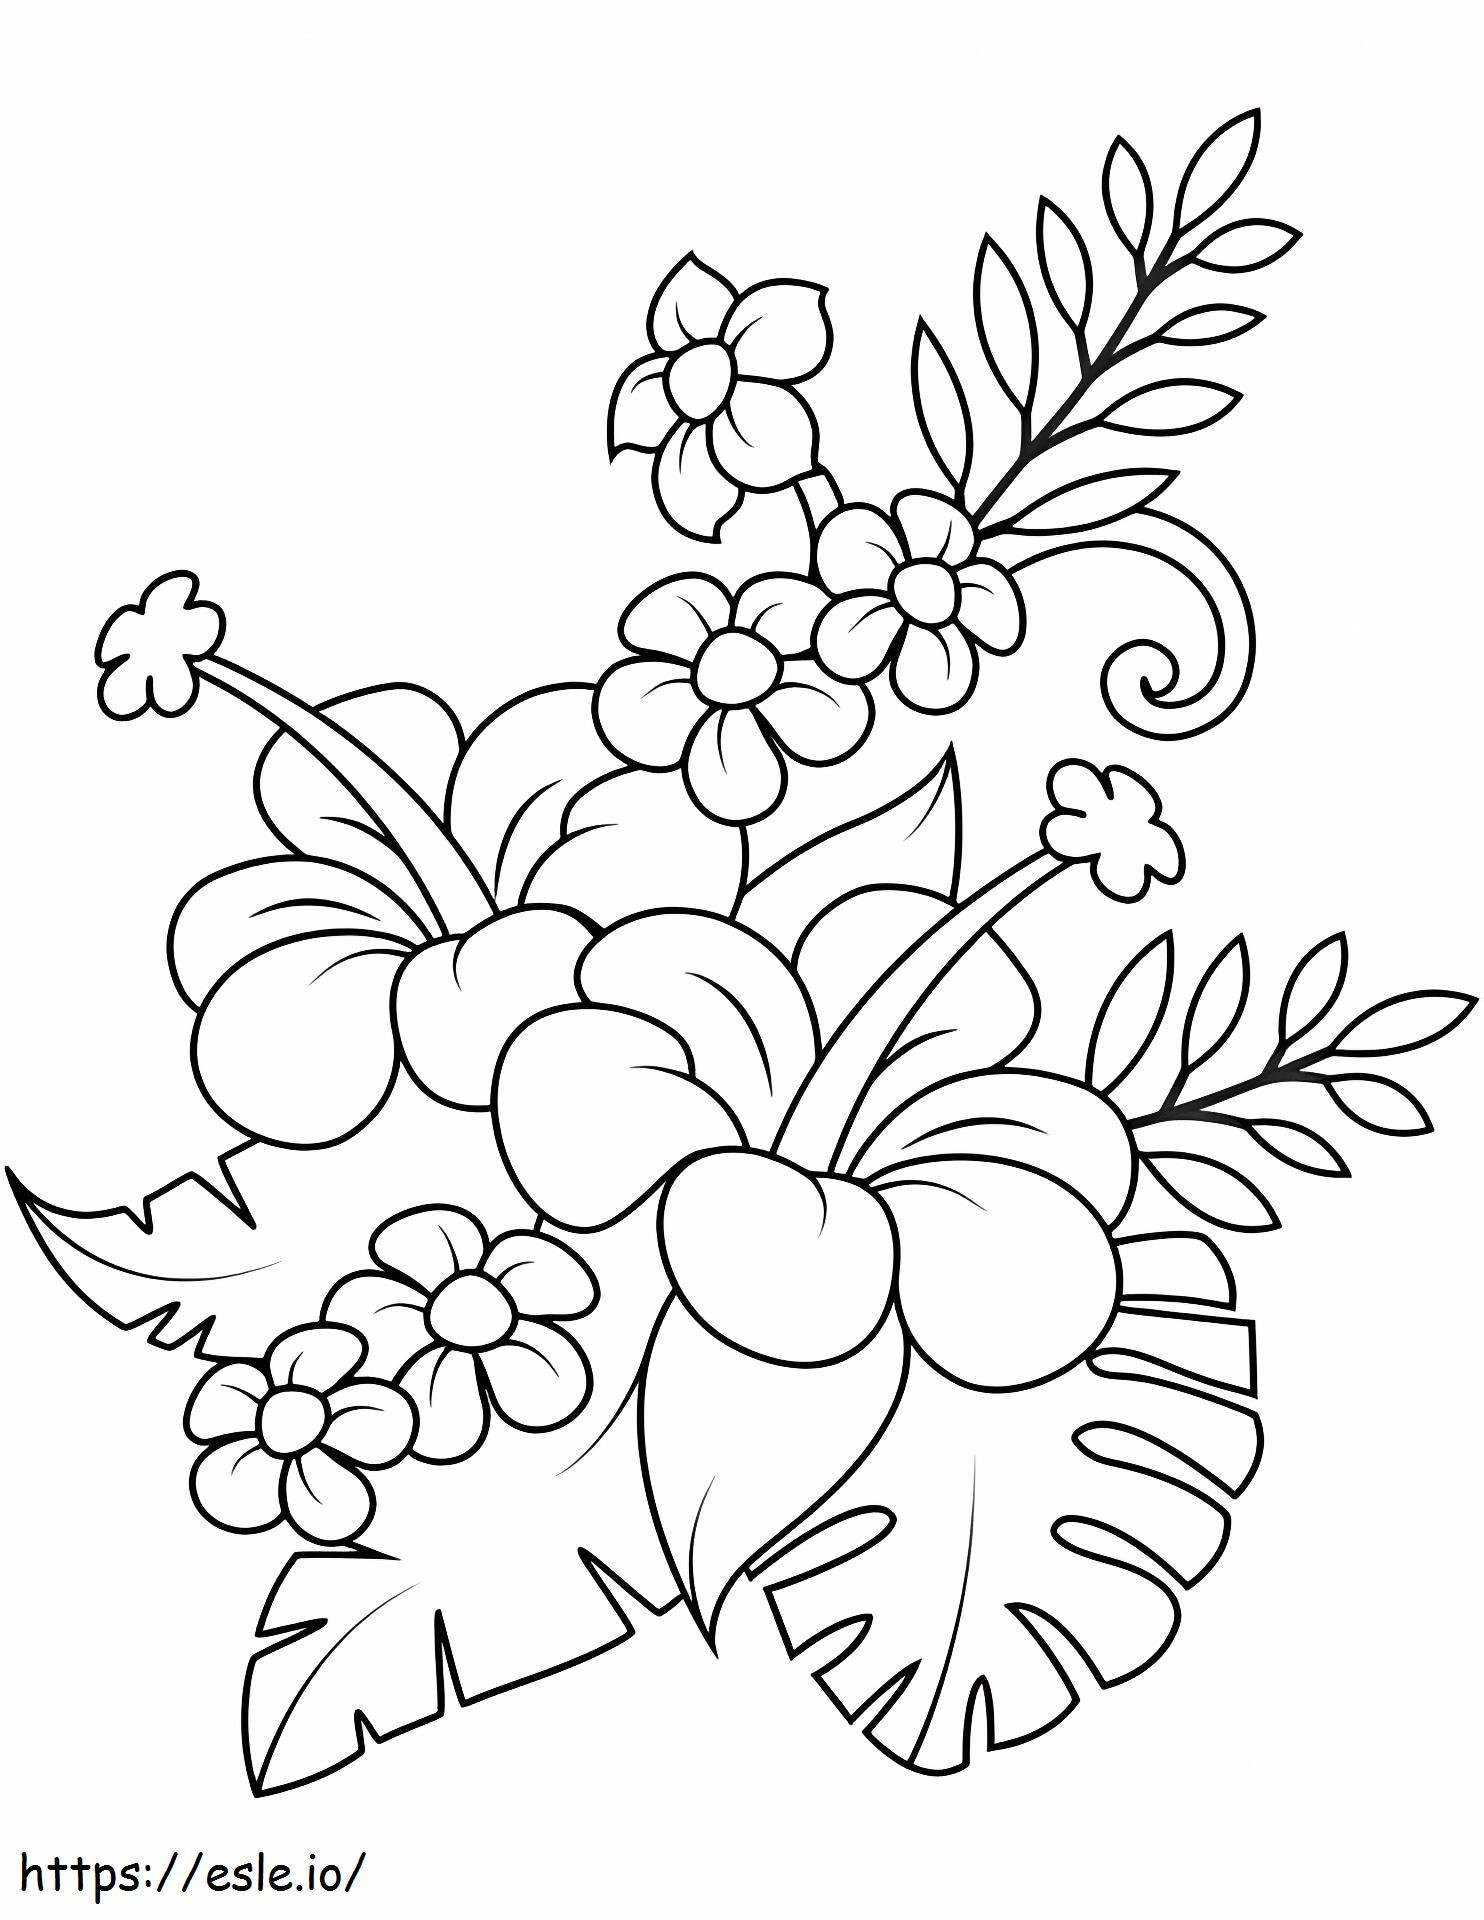 1527063860_Blumenstrauß mit Hibiskus- und Monstera-Blättern ausmalbilder